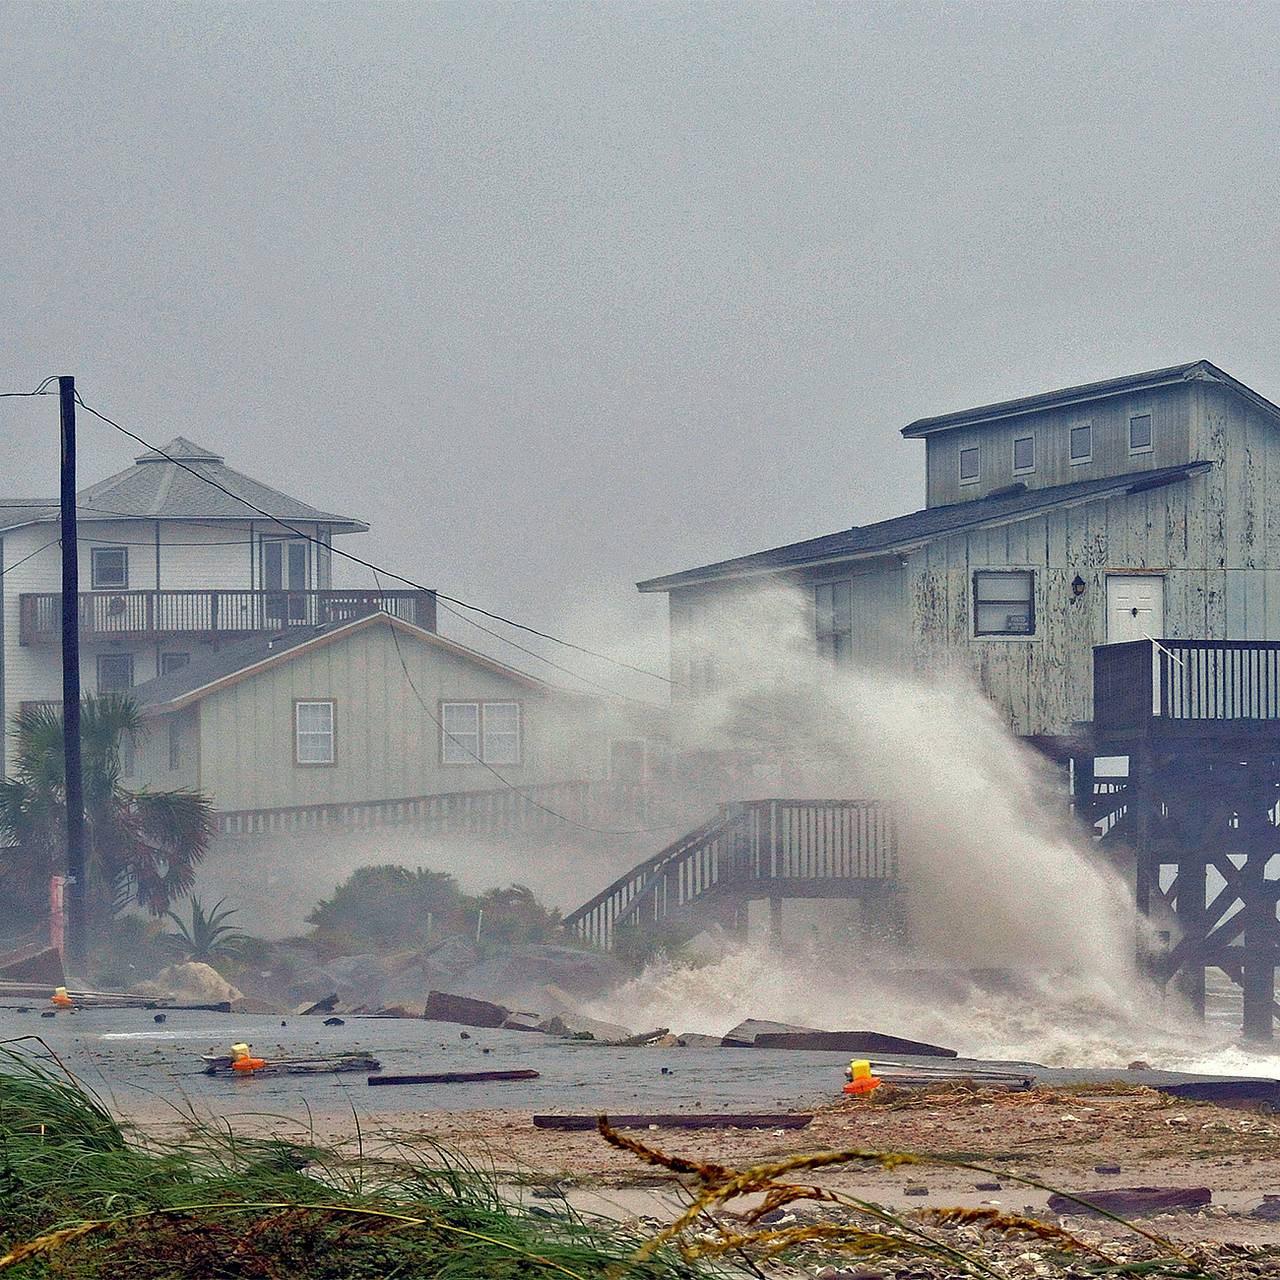 GISMETEO: Эксперты США подвели предварительные итоги сезона ураганов - Климат | Новости погоды.